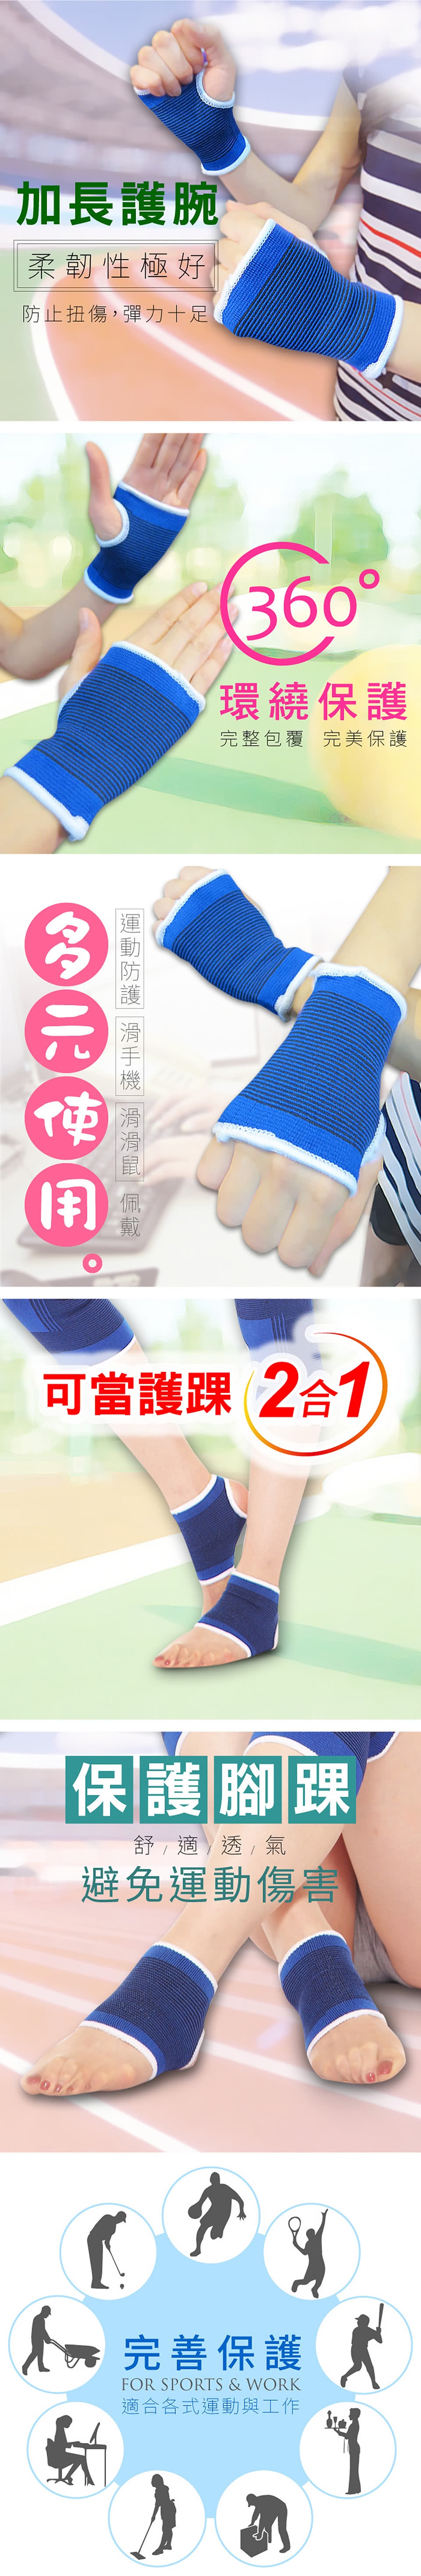 【Yi-sheng】*發燒新品*健康減壓護脊板挺背帶(611美背+藍膝藍腕)